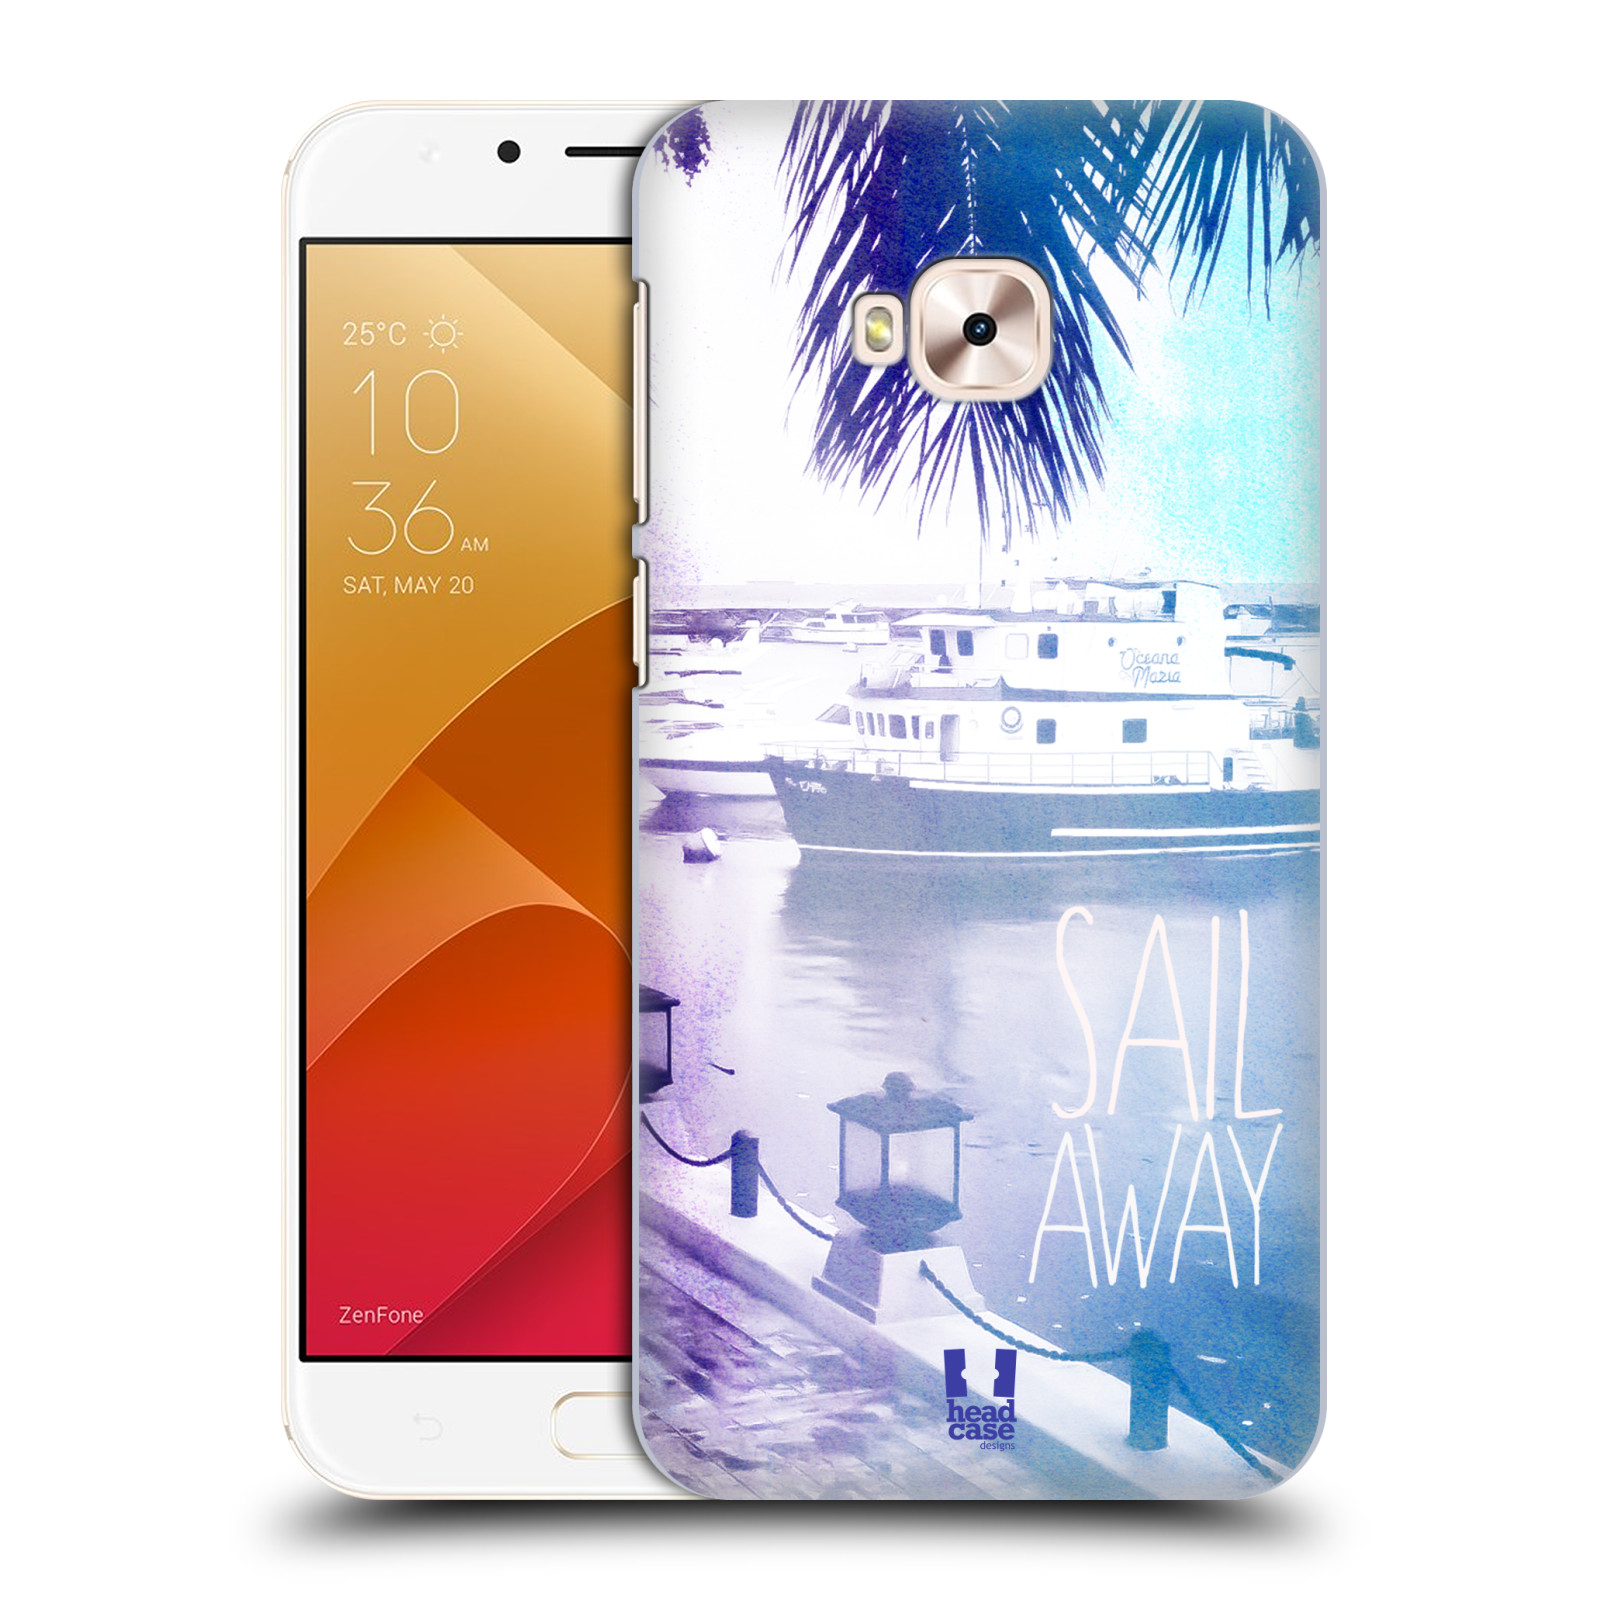 HEAD CASE plastový obal na mobil Asus Zenfone 4 Selfie Pro ZD552KL vzor Pozitivní vlny MODRÁ, přístav s loděmi SAIL AWAY